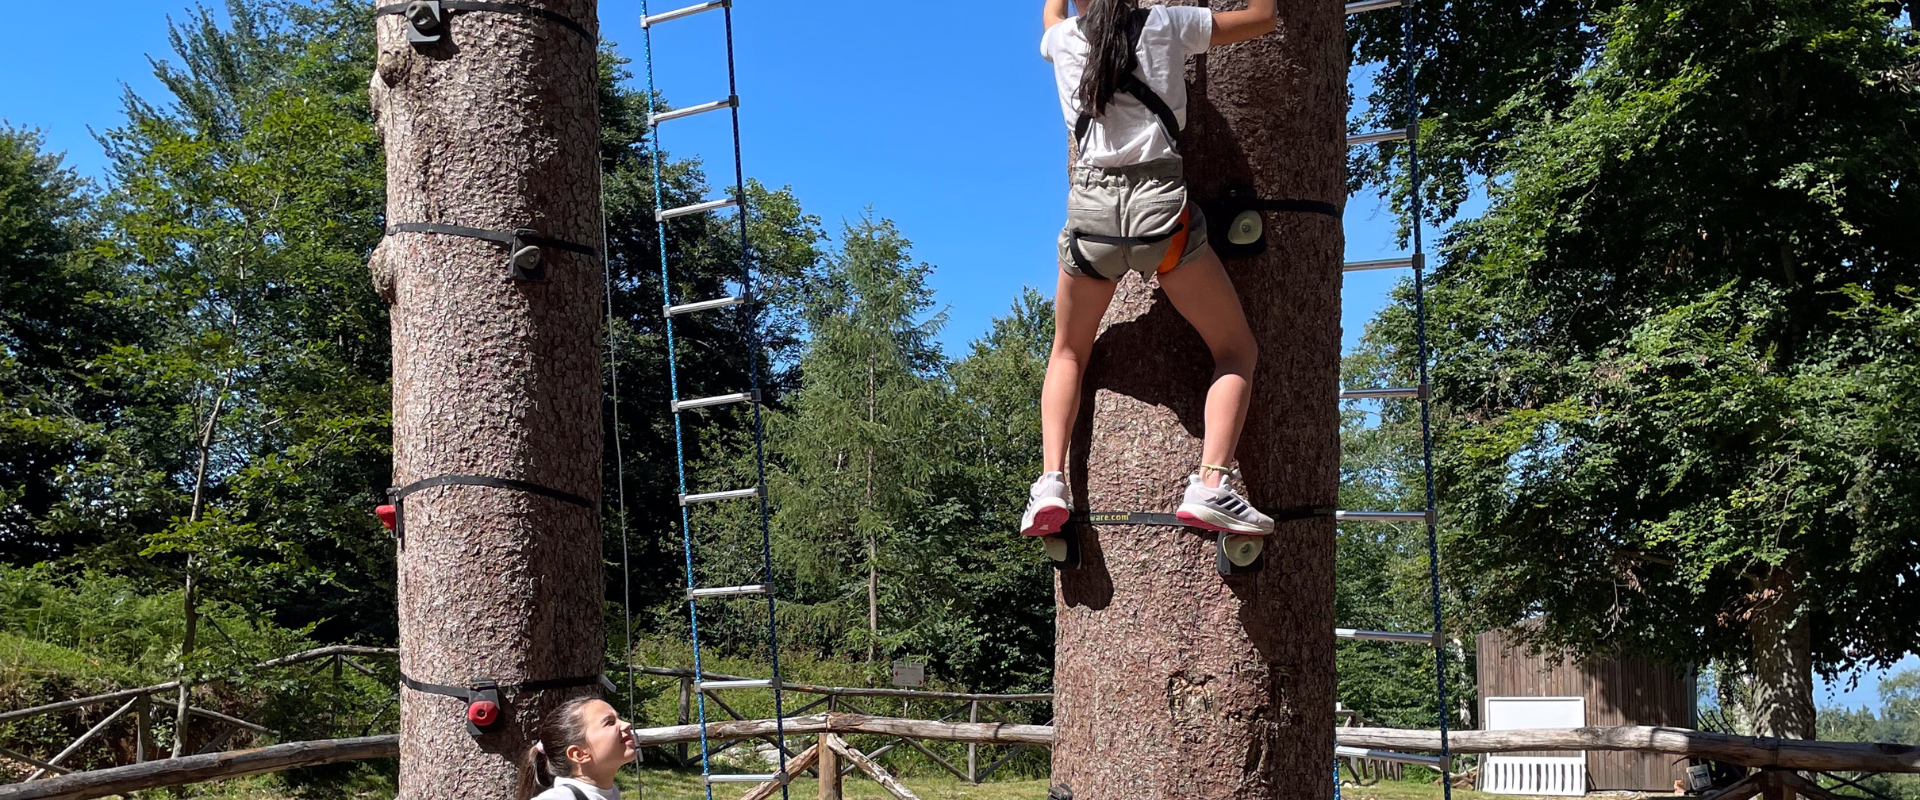 Free tree climbing at Mottarone Adventure Park on #MottaroneDay.